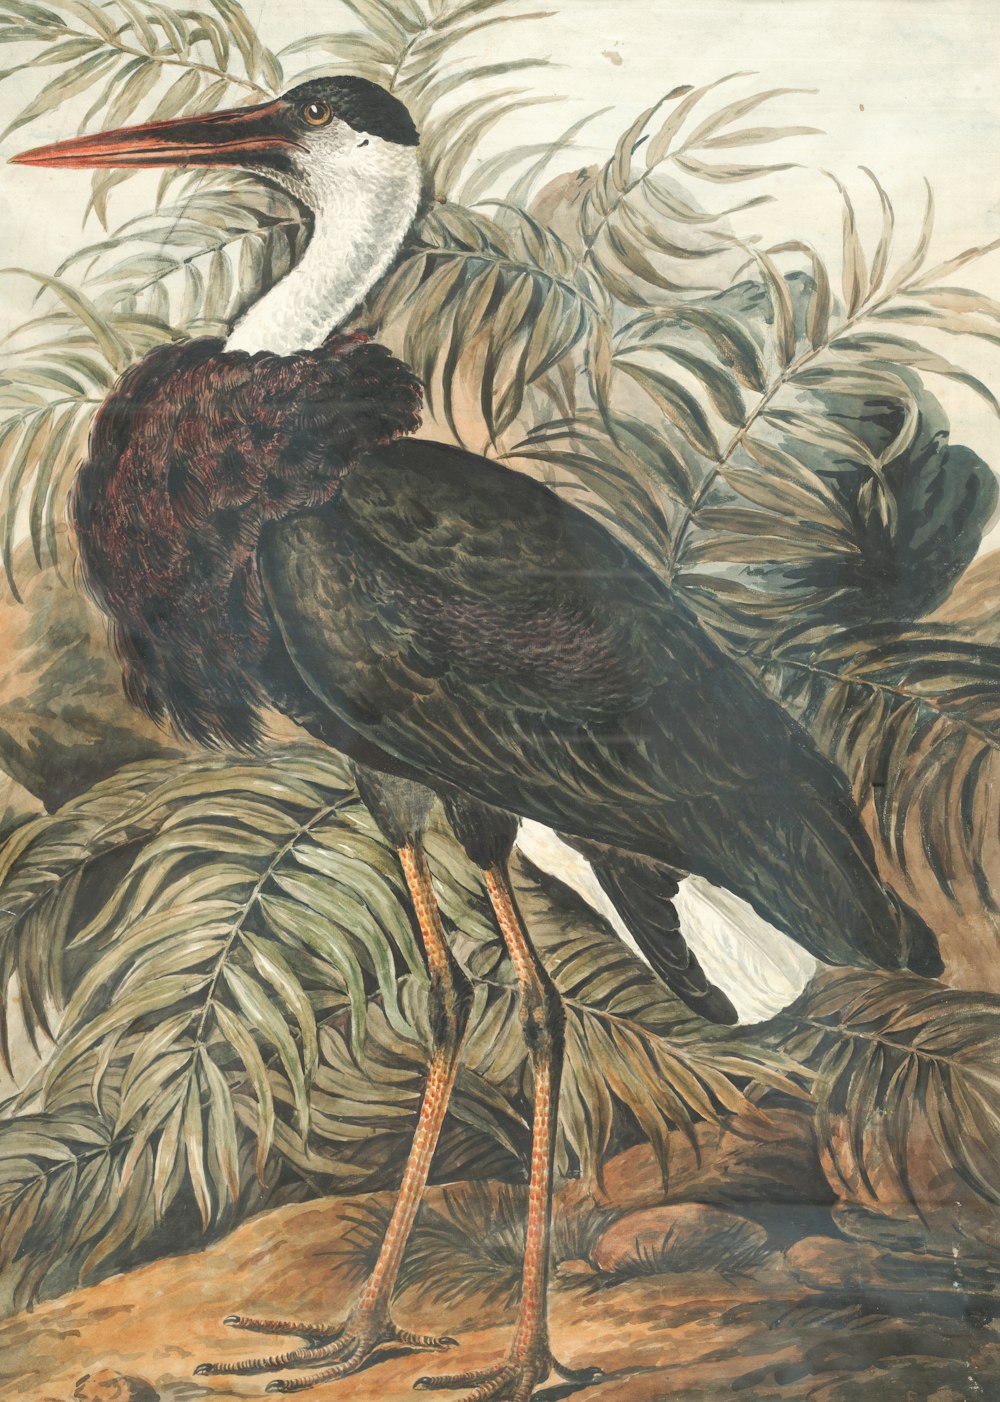 Pintura de pájaro grulla en blanco y negro